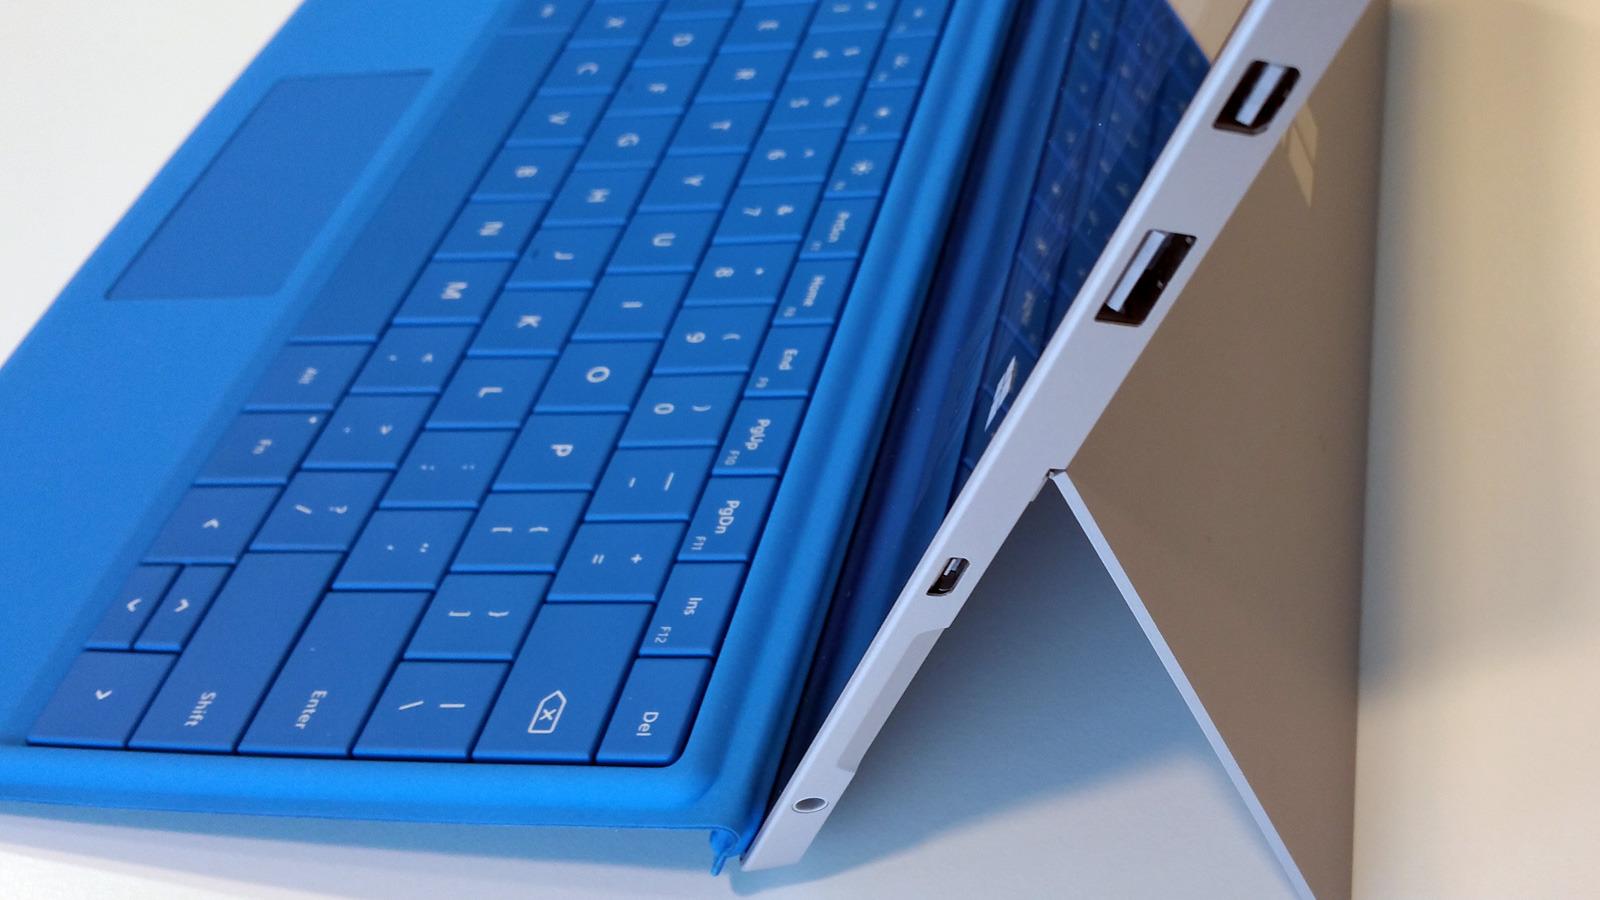 Portene sitter på høyre side av brettet. I likhet med Surface Pro 3, kan Surface 3 plasseres i en krybbe med ekstra tilkoblingsmuligheter. Legg også merke til at det nye brettet har får ladekontakt av typen Micro USB. Foto: Espen Irwing Swang, Tek.no